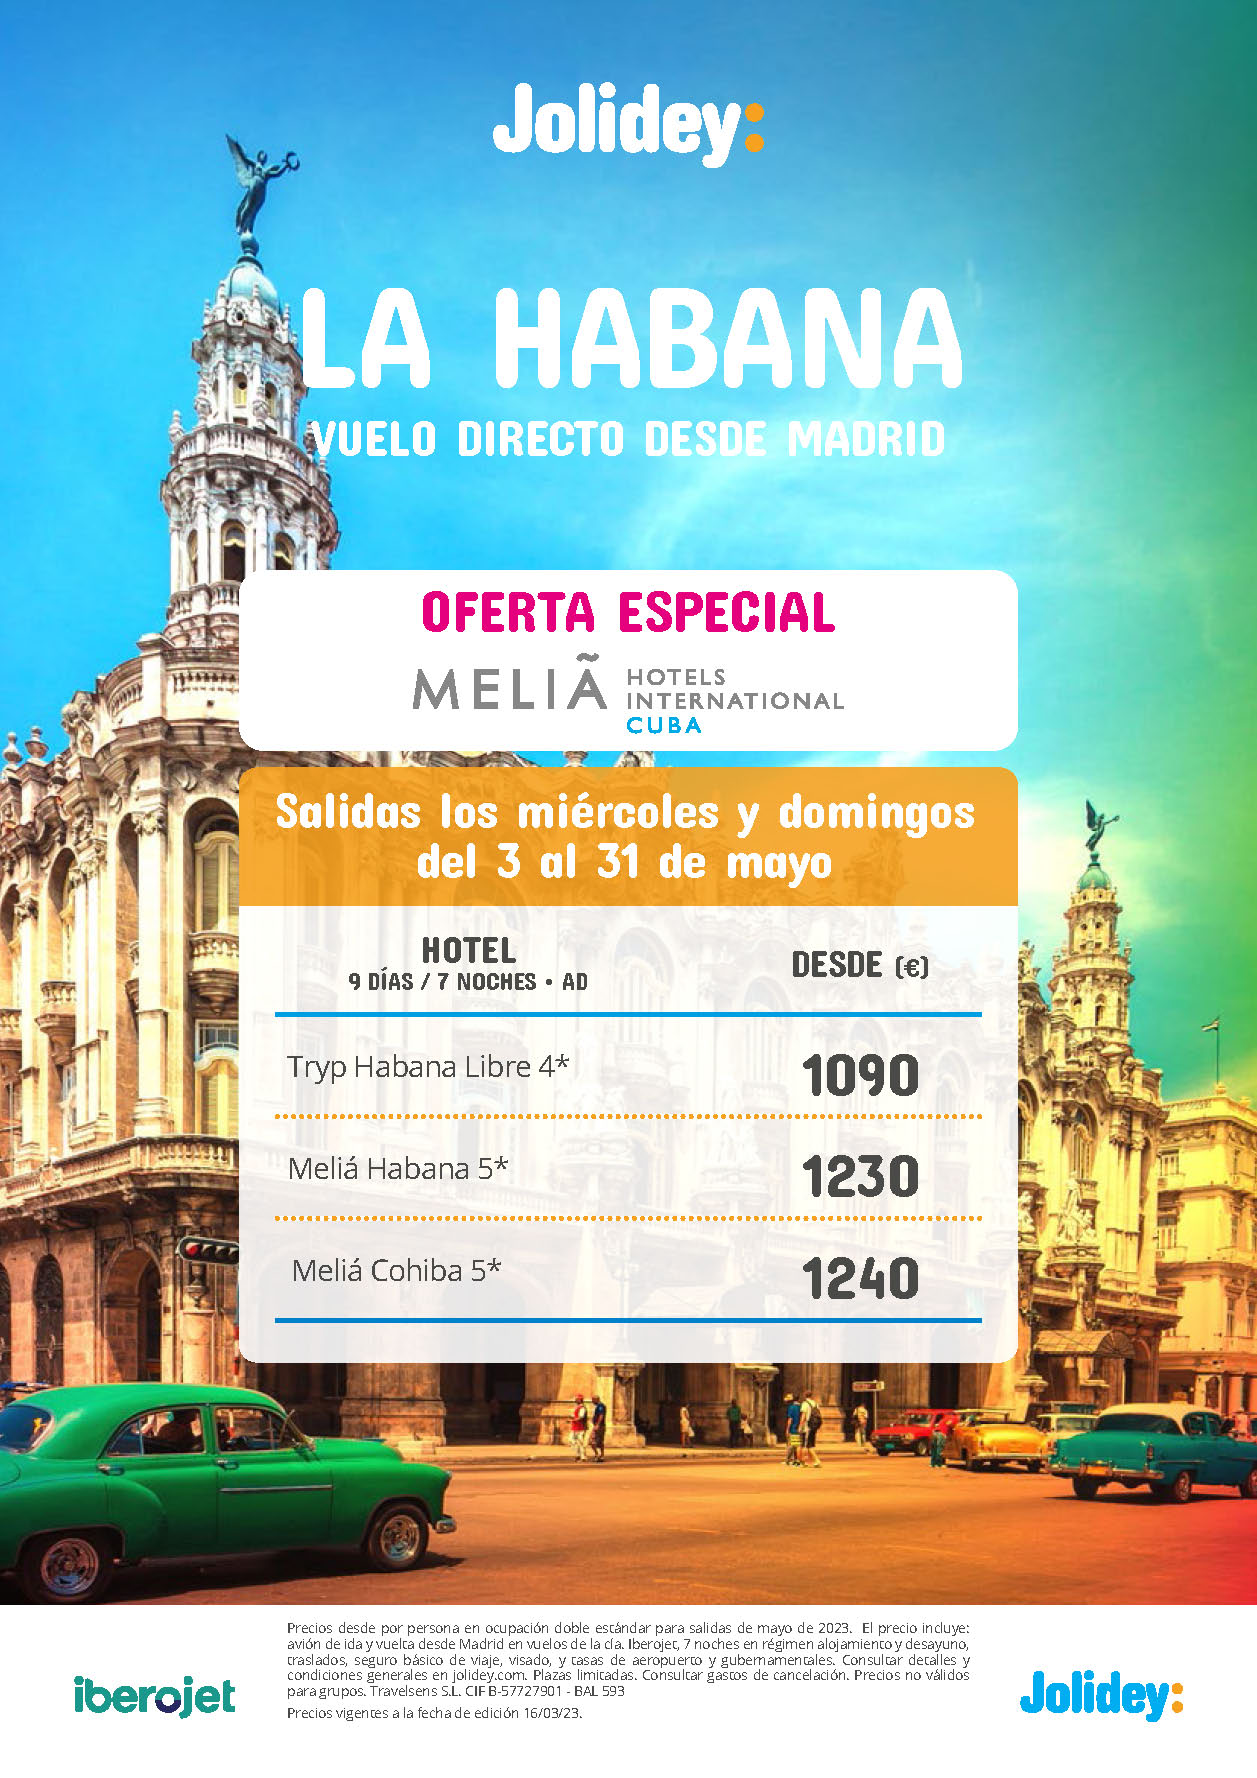 Oferta Jolidey Mayo 2023 Estancia en La Habana Cuba 9 dias Alojamiento y Desayuno salida en vuelo directo desde Madrid